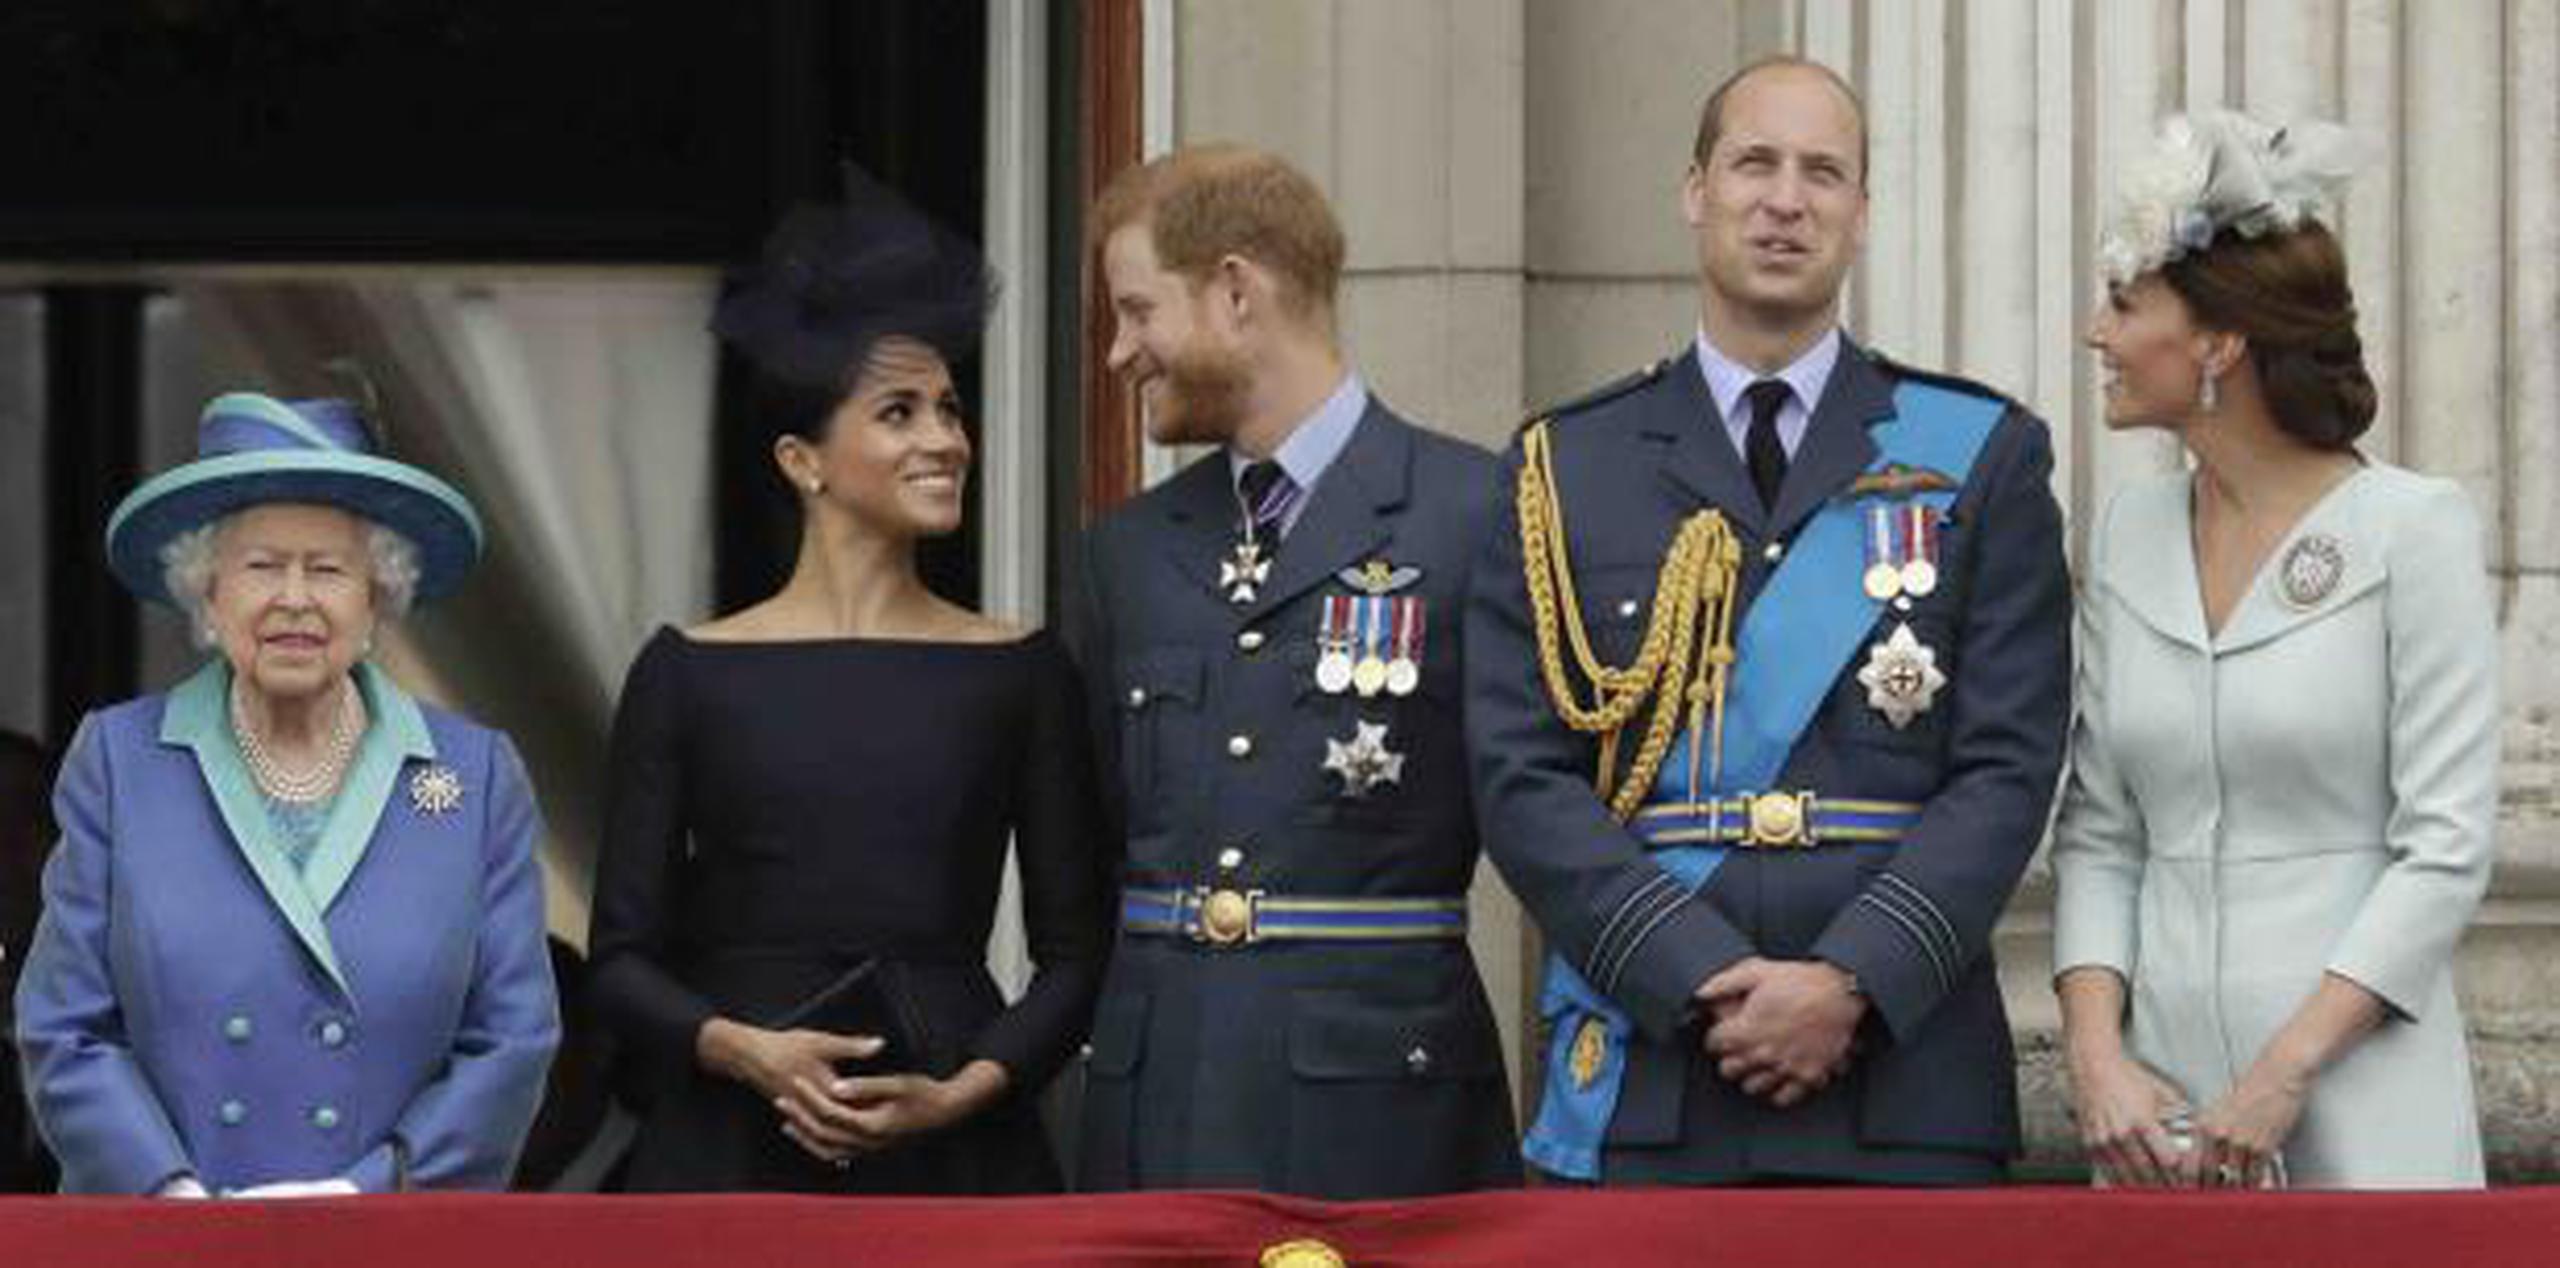 De izquierda a derecha, la reina Isabel II, Meghan la duquesa de Sussex, el príncipe Enrique, el príncipe Guillermo y Kate, la duquesa de Cambridge. (AP / Matt Dunham)